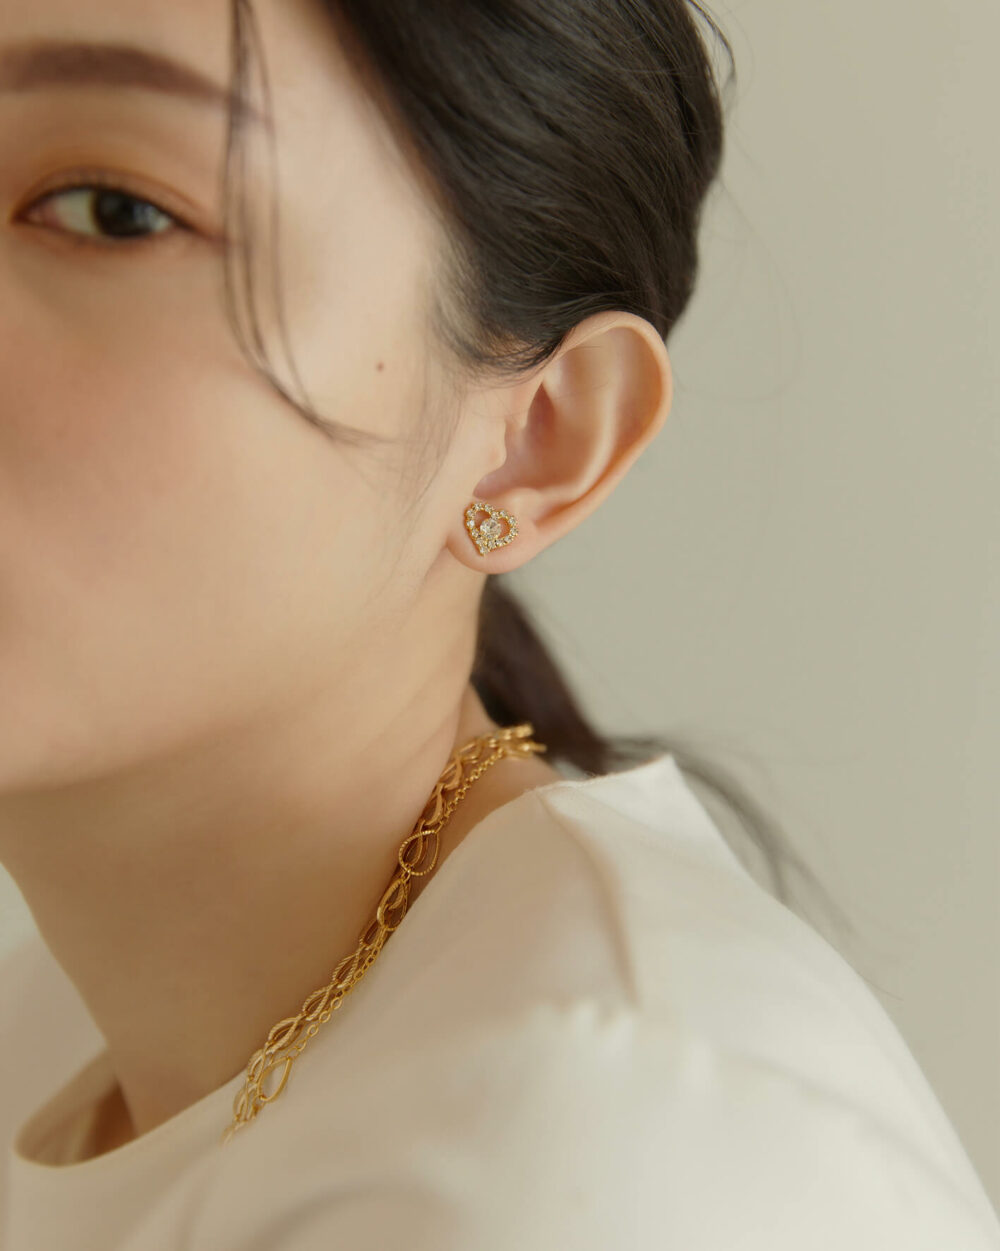 Eco安珂,韓國飾品,韓國耳環,韓國耳骨夾,韓國耳扣,耳夾式耳環,磁鐵愛心耳環,磁吸式耳環,無耳洞耳環